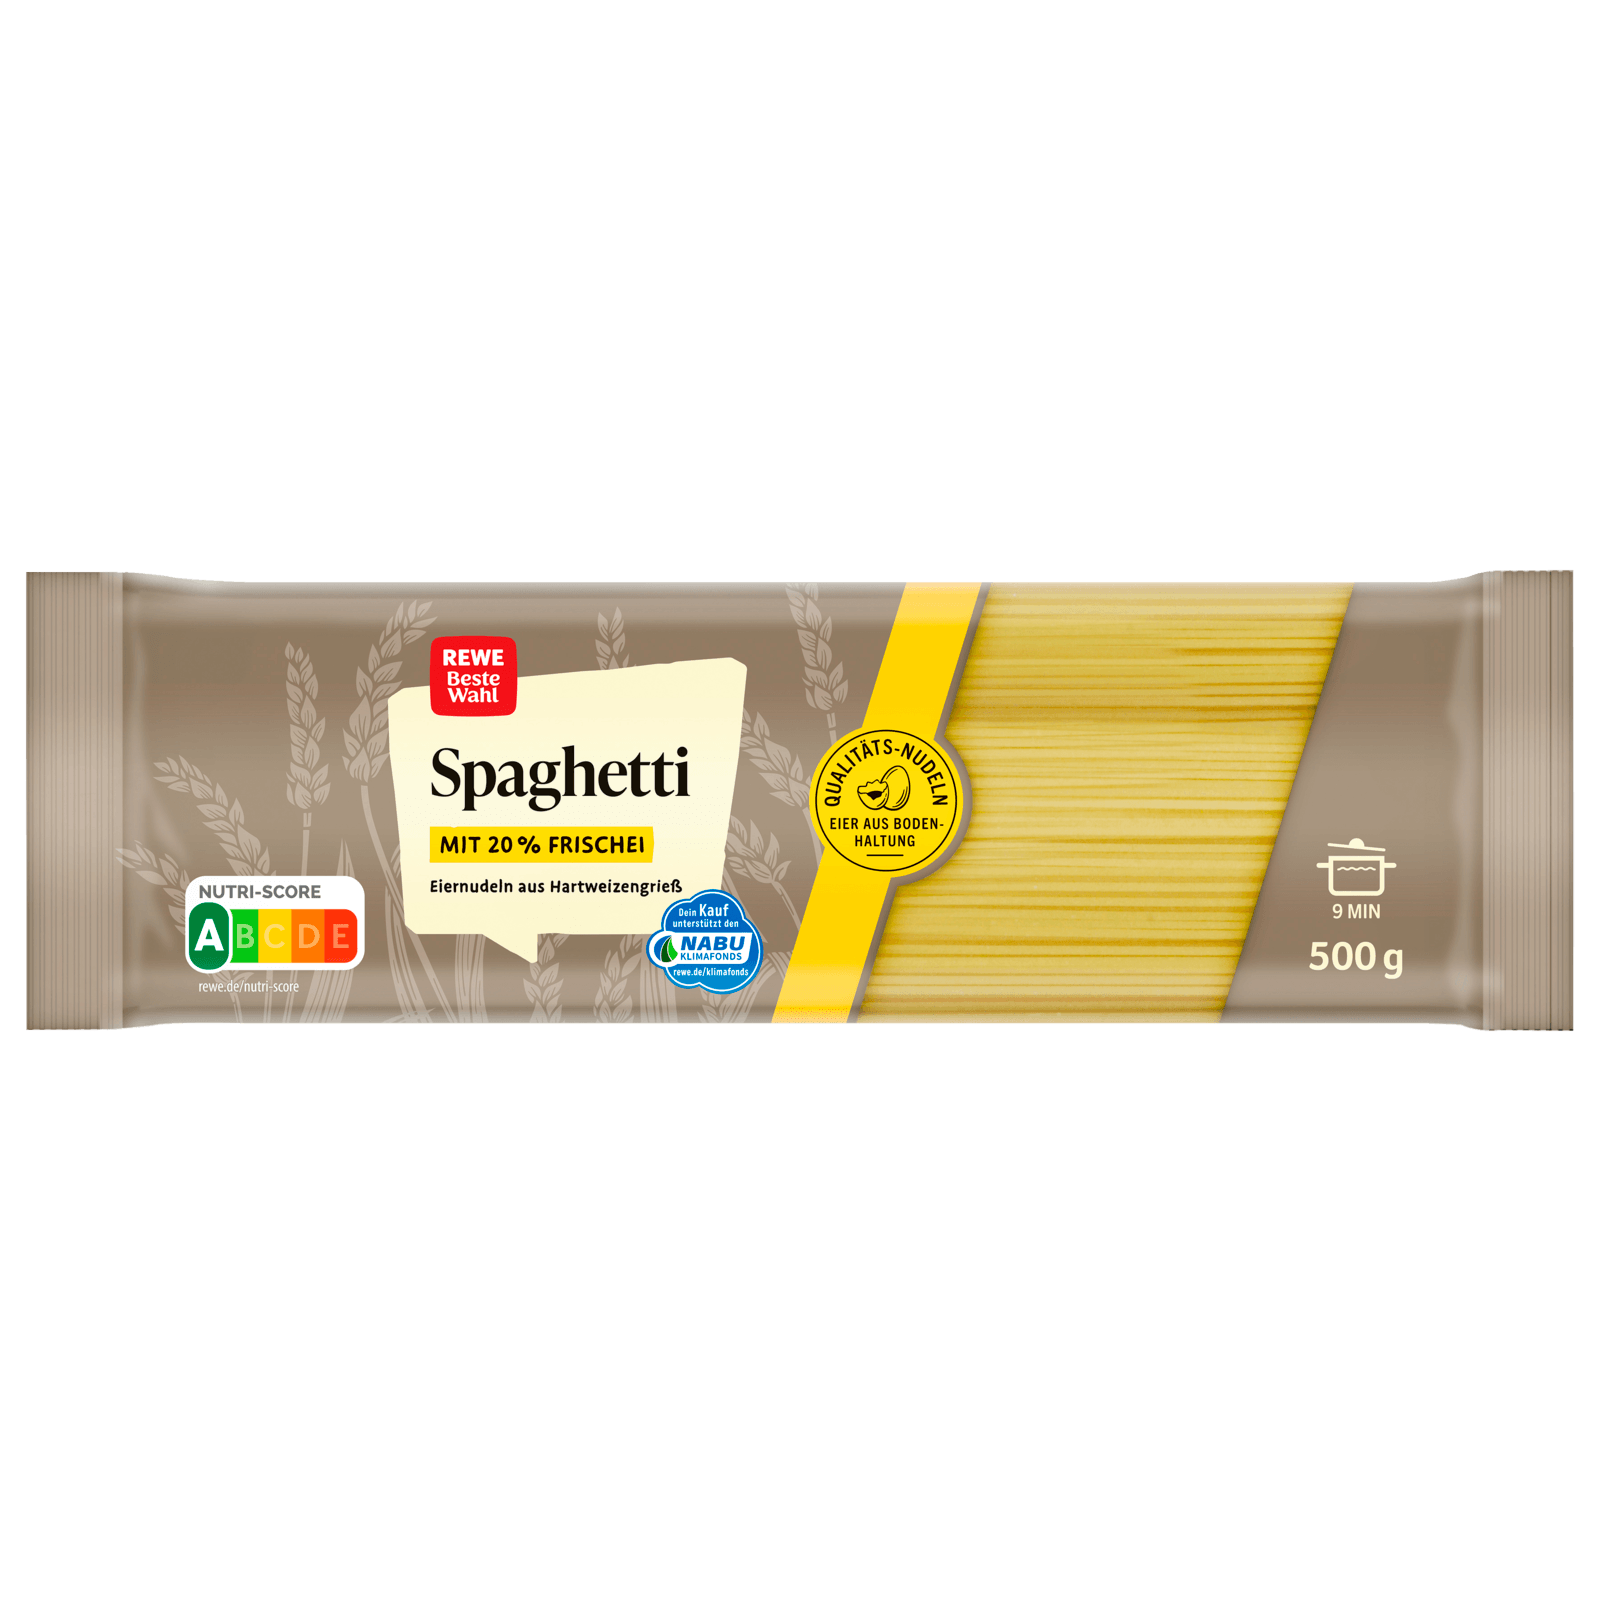 Rewe Beste Wahl Spaghetti 500g Bei Rewe Online Bestellen